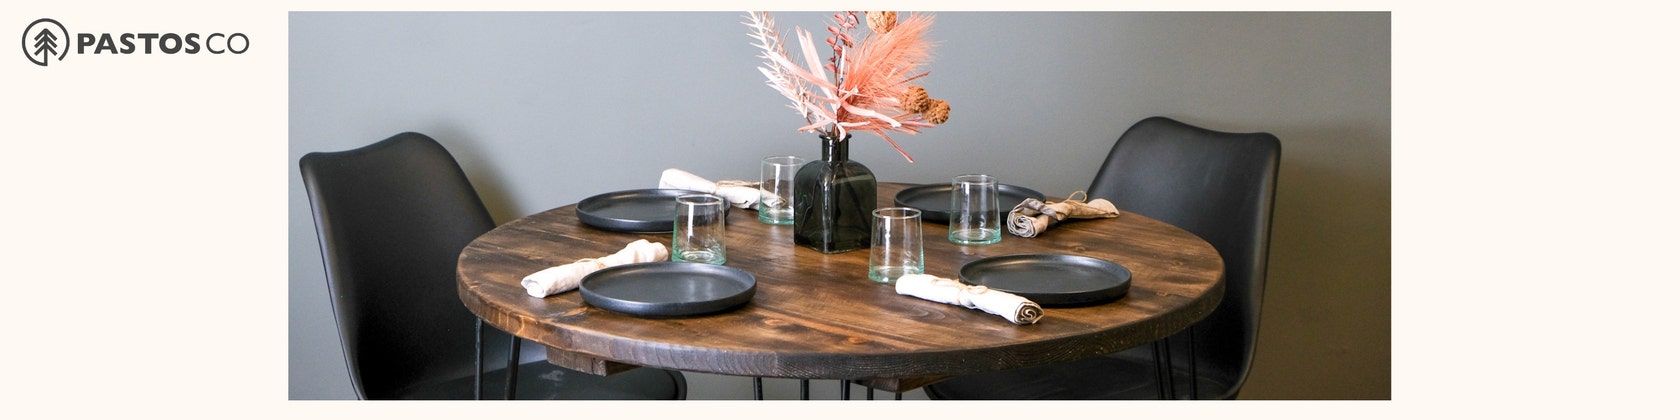  Design 59 Patas de metal para mesa de comedor, base de mesa para  escritorio, cocina, restaurante y otras mesas, patas negras para muebles,  pedestal de acero, muebles modernos de mediados de